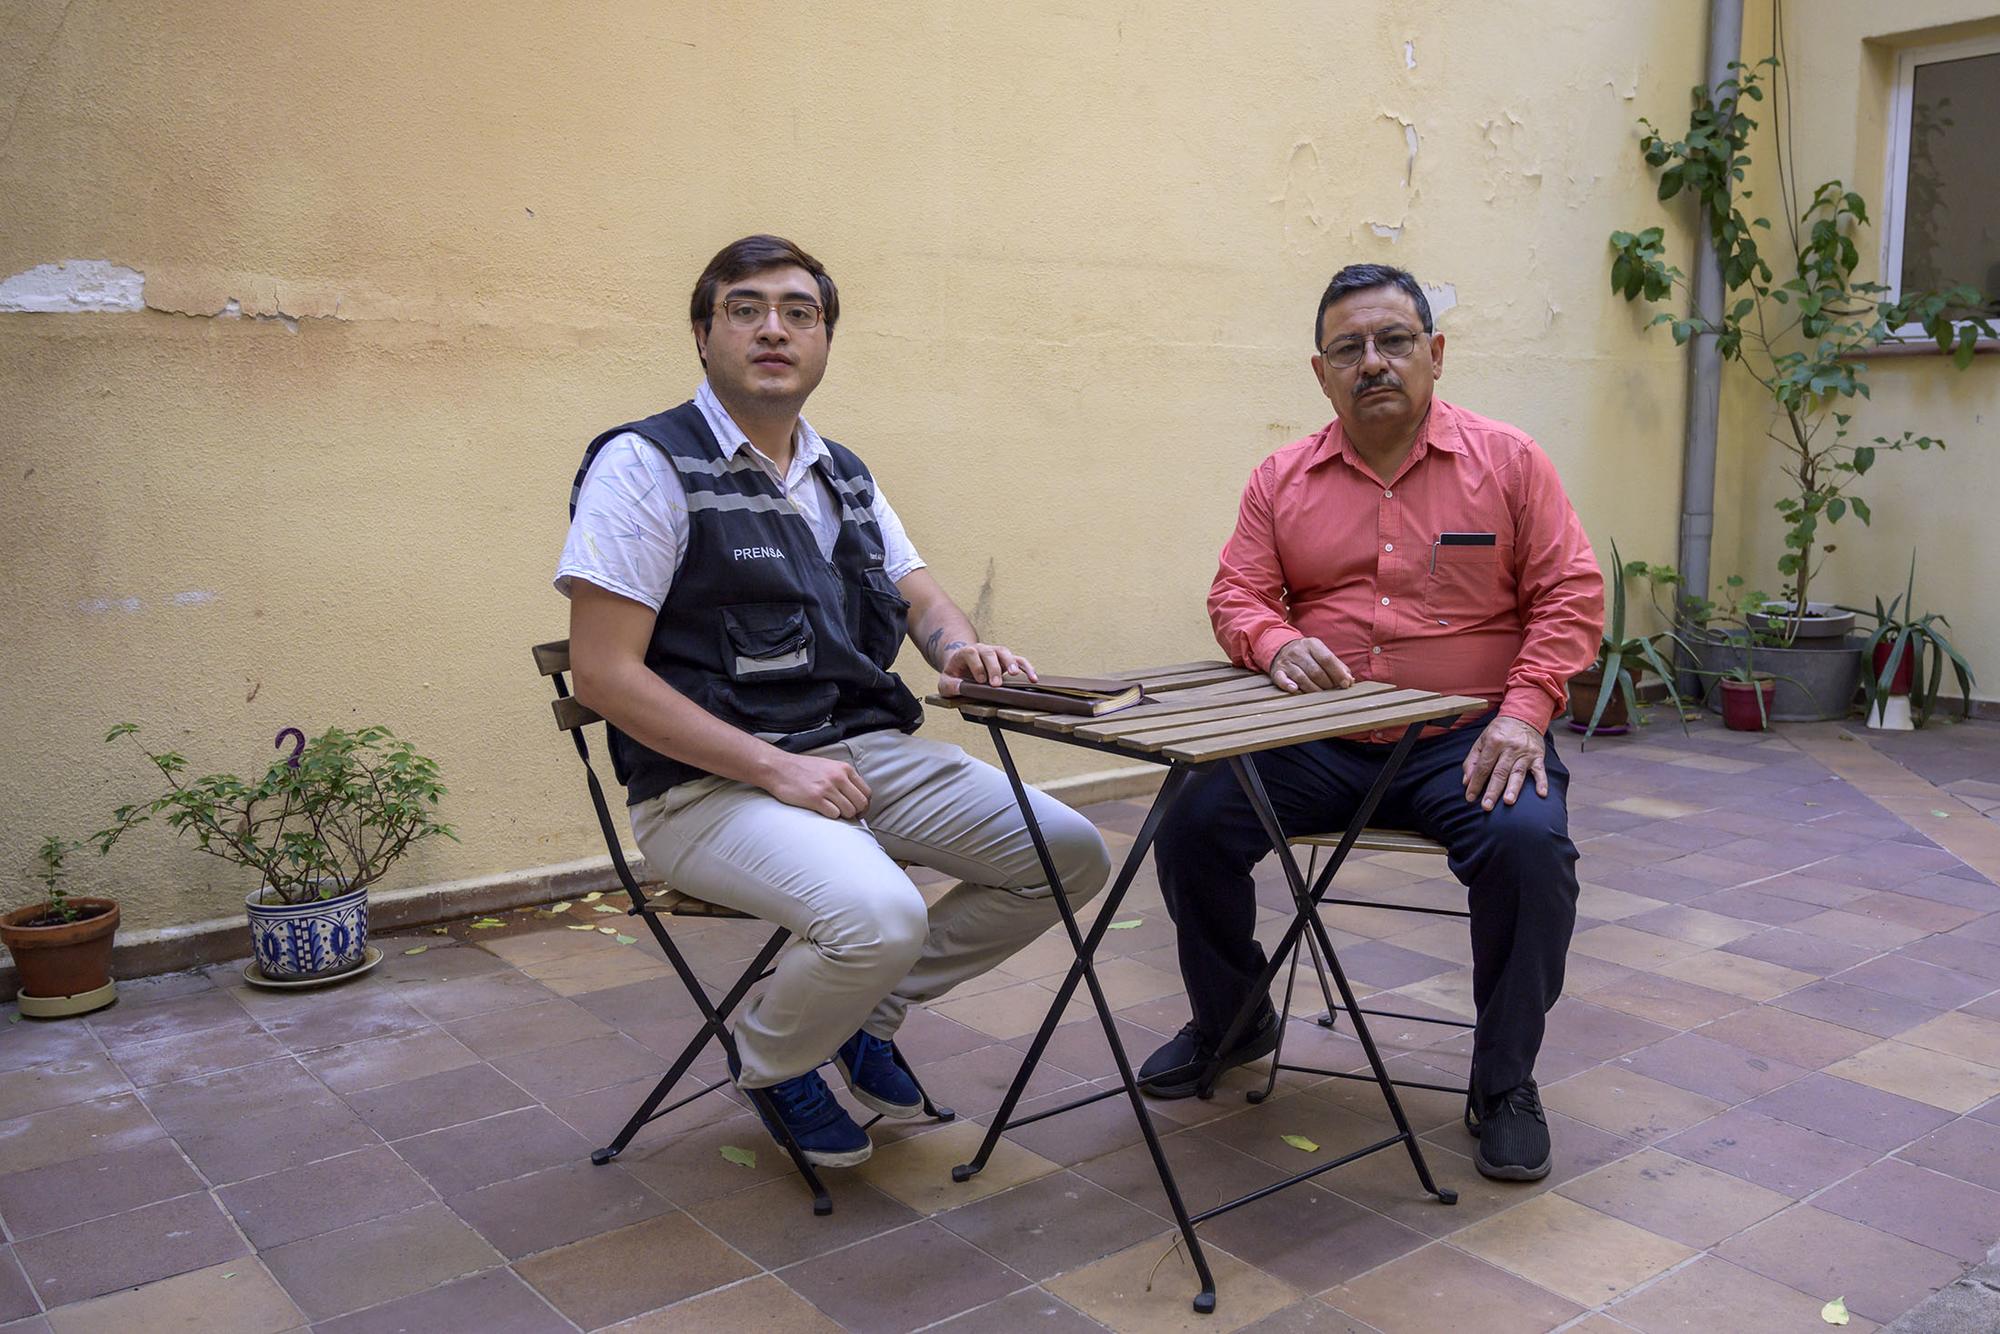 Periodistas mexicanos perseguidos - 1